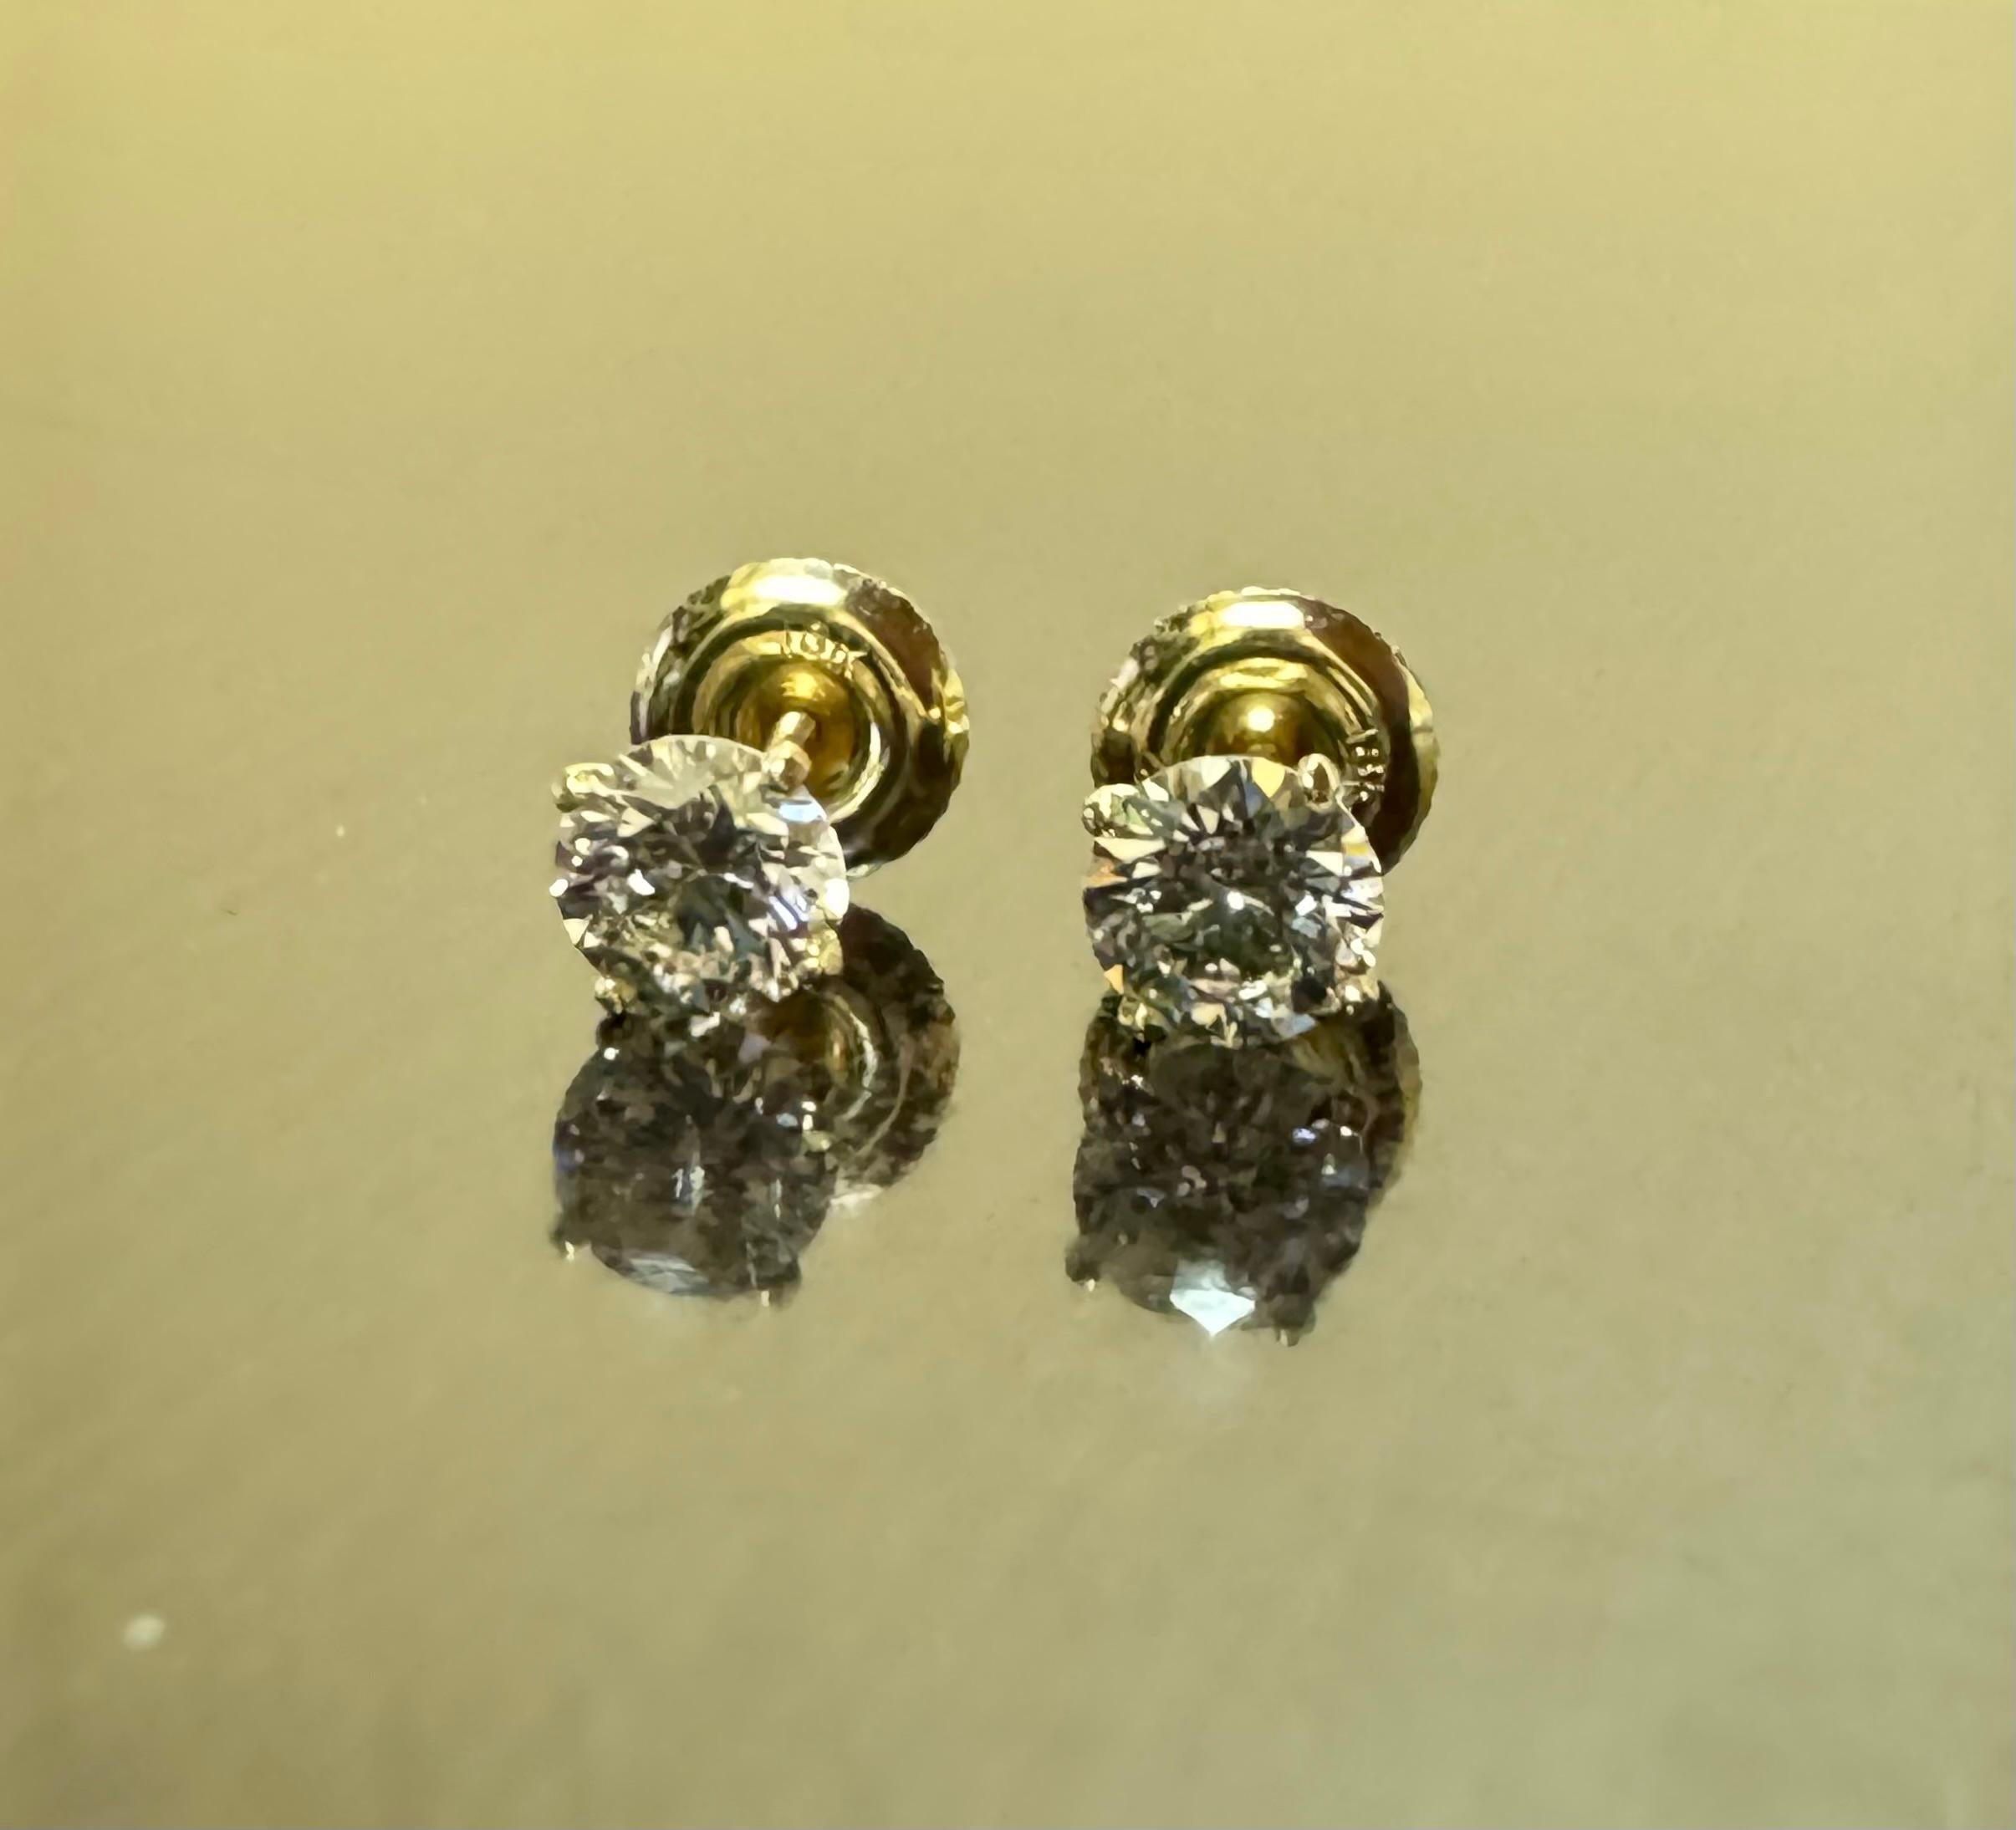 DeKara Designs Klassisch

Metall- 18K Gelbgold, .750.

Steine- 2 GIA zertifizierte runde Diamanten, 1 H Farbe VS1 Reinheit 0,54 Karat, 1 H Farbe VS1 Reinheit 0,53 Karat. Beide Diamanten sind mit einer Laserbeschriftung versehen.

Ohrringe mit